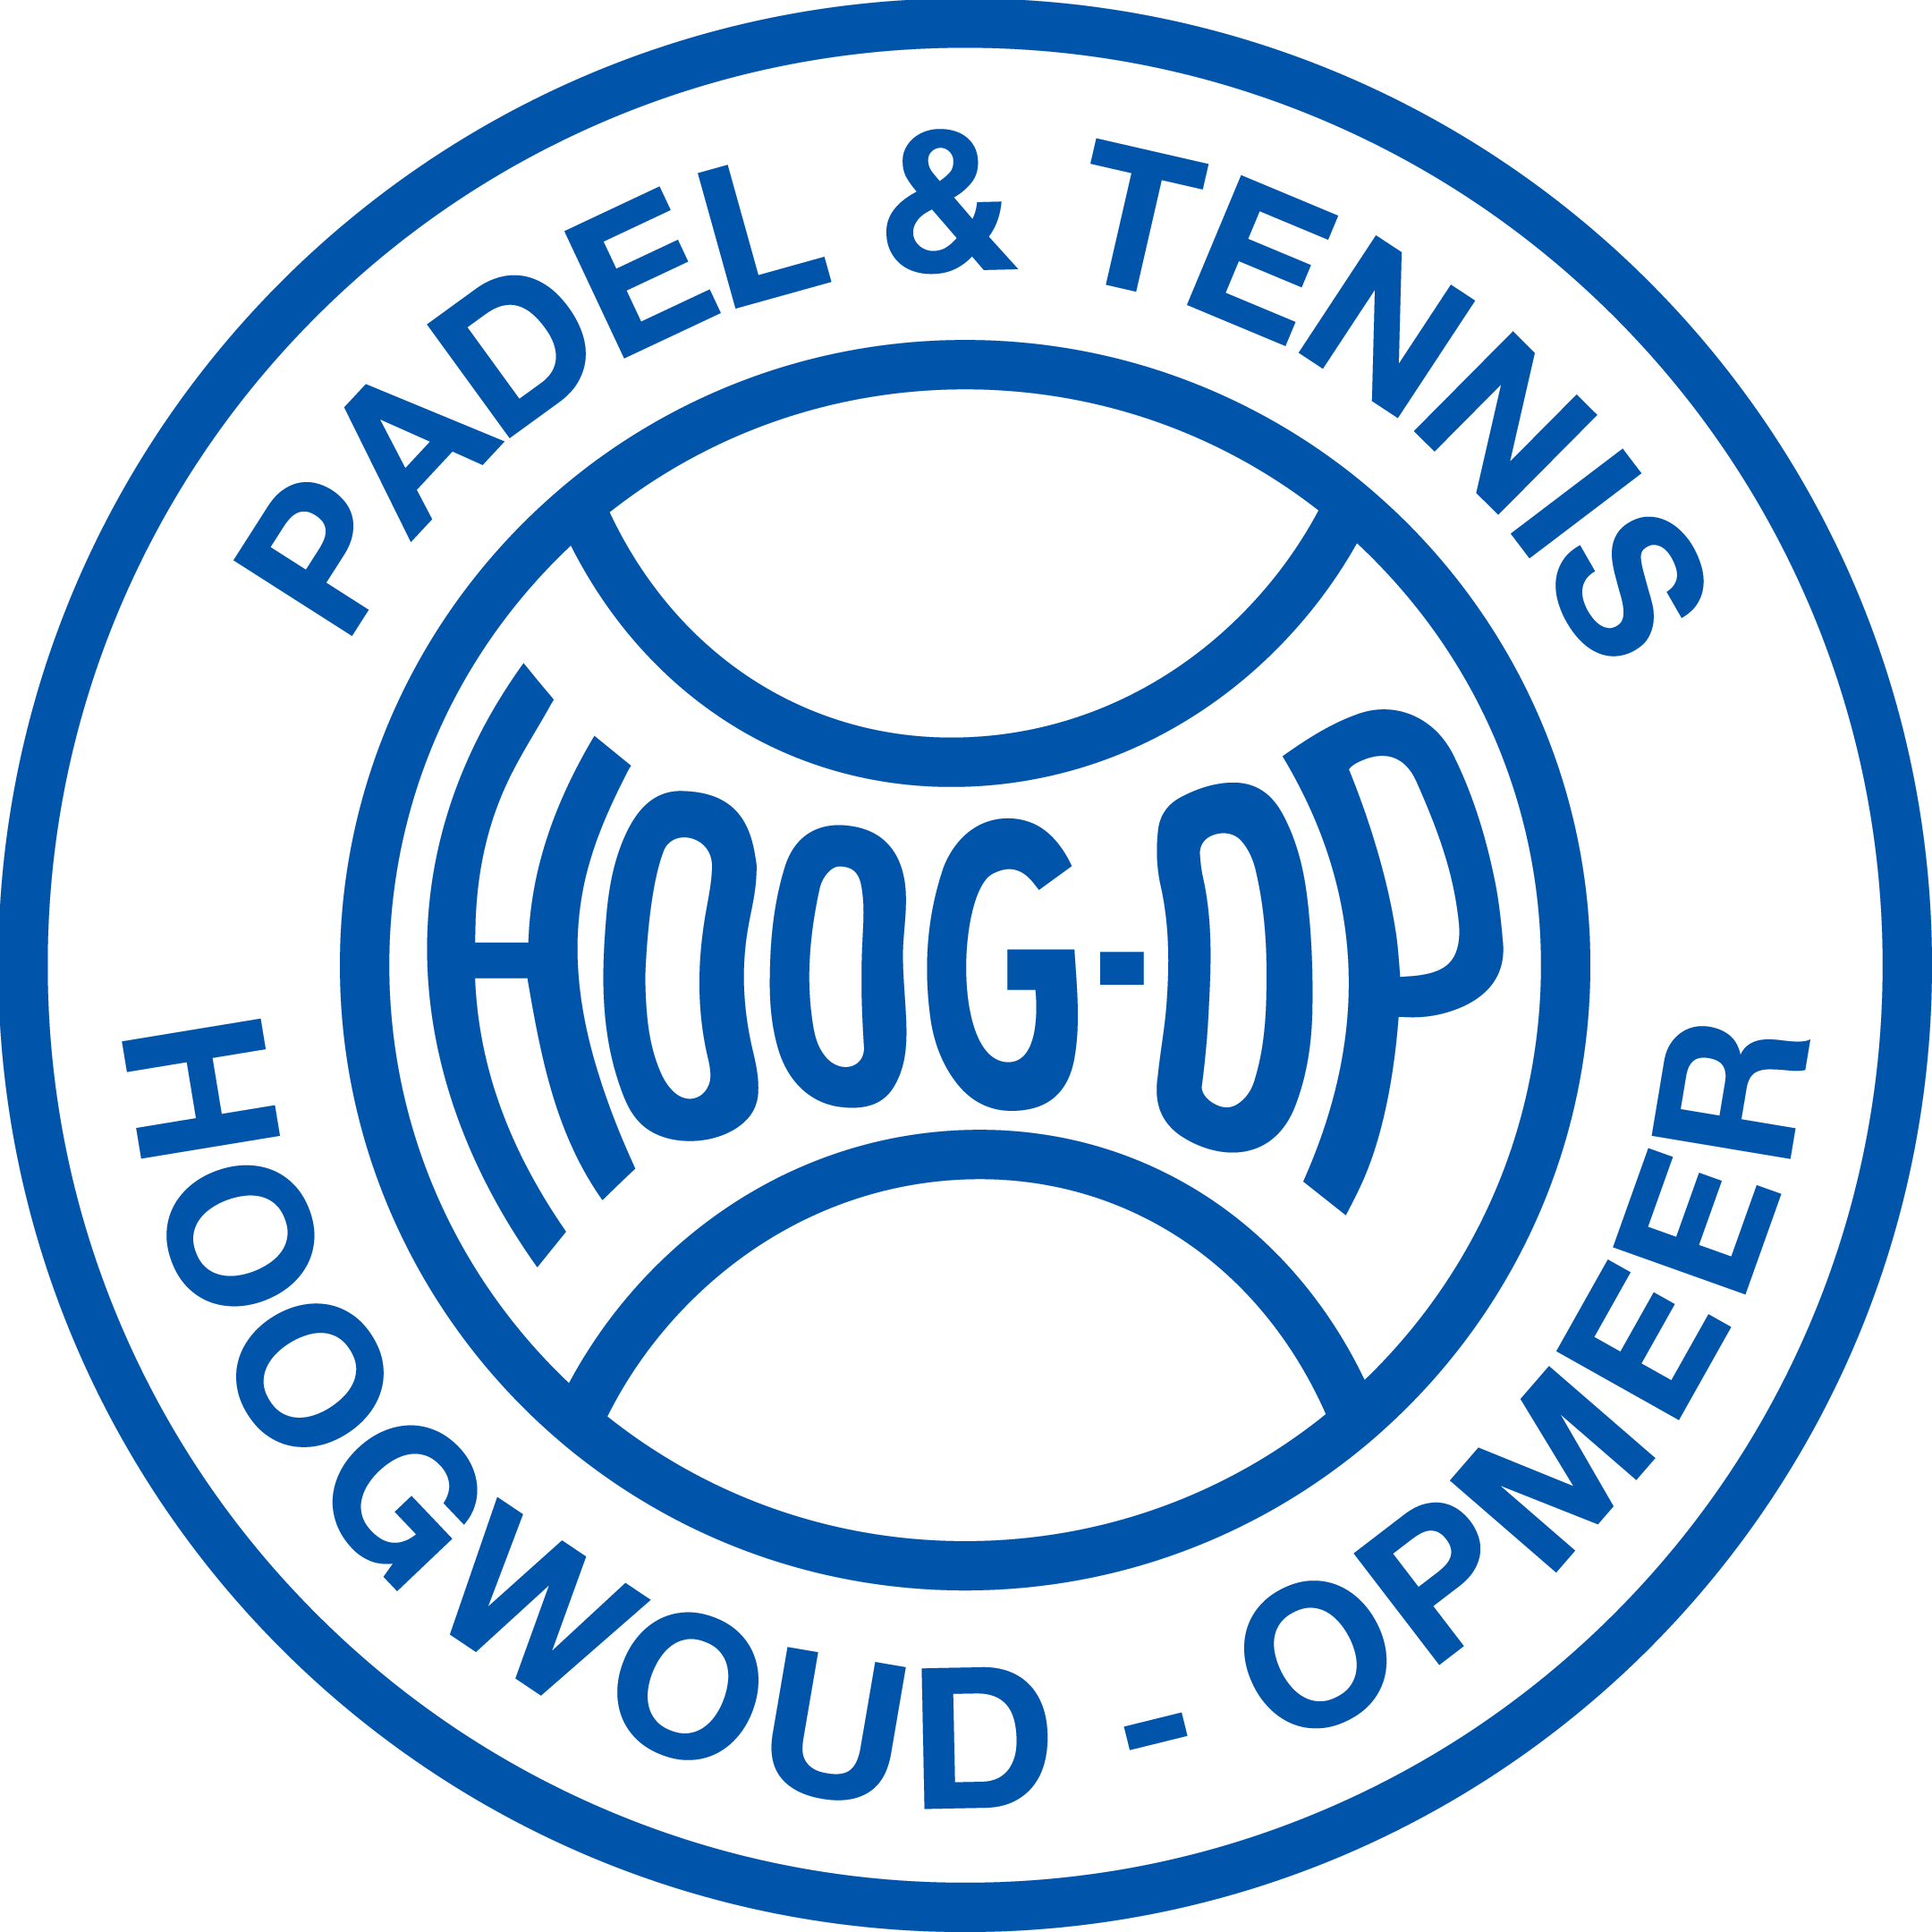 Logo TV Hoog-Op